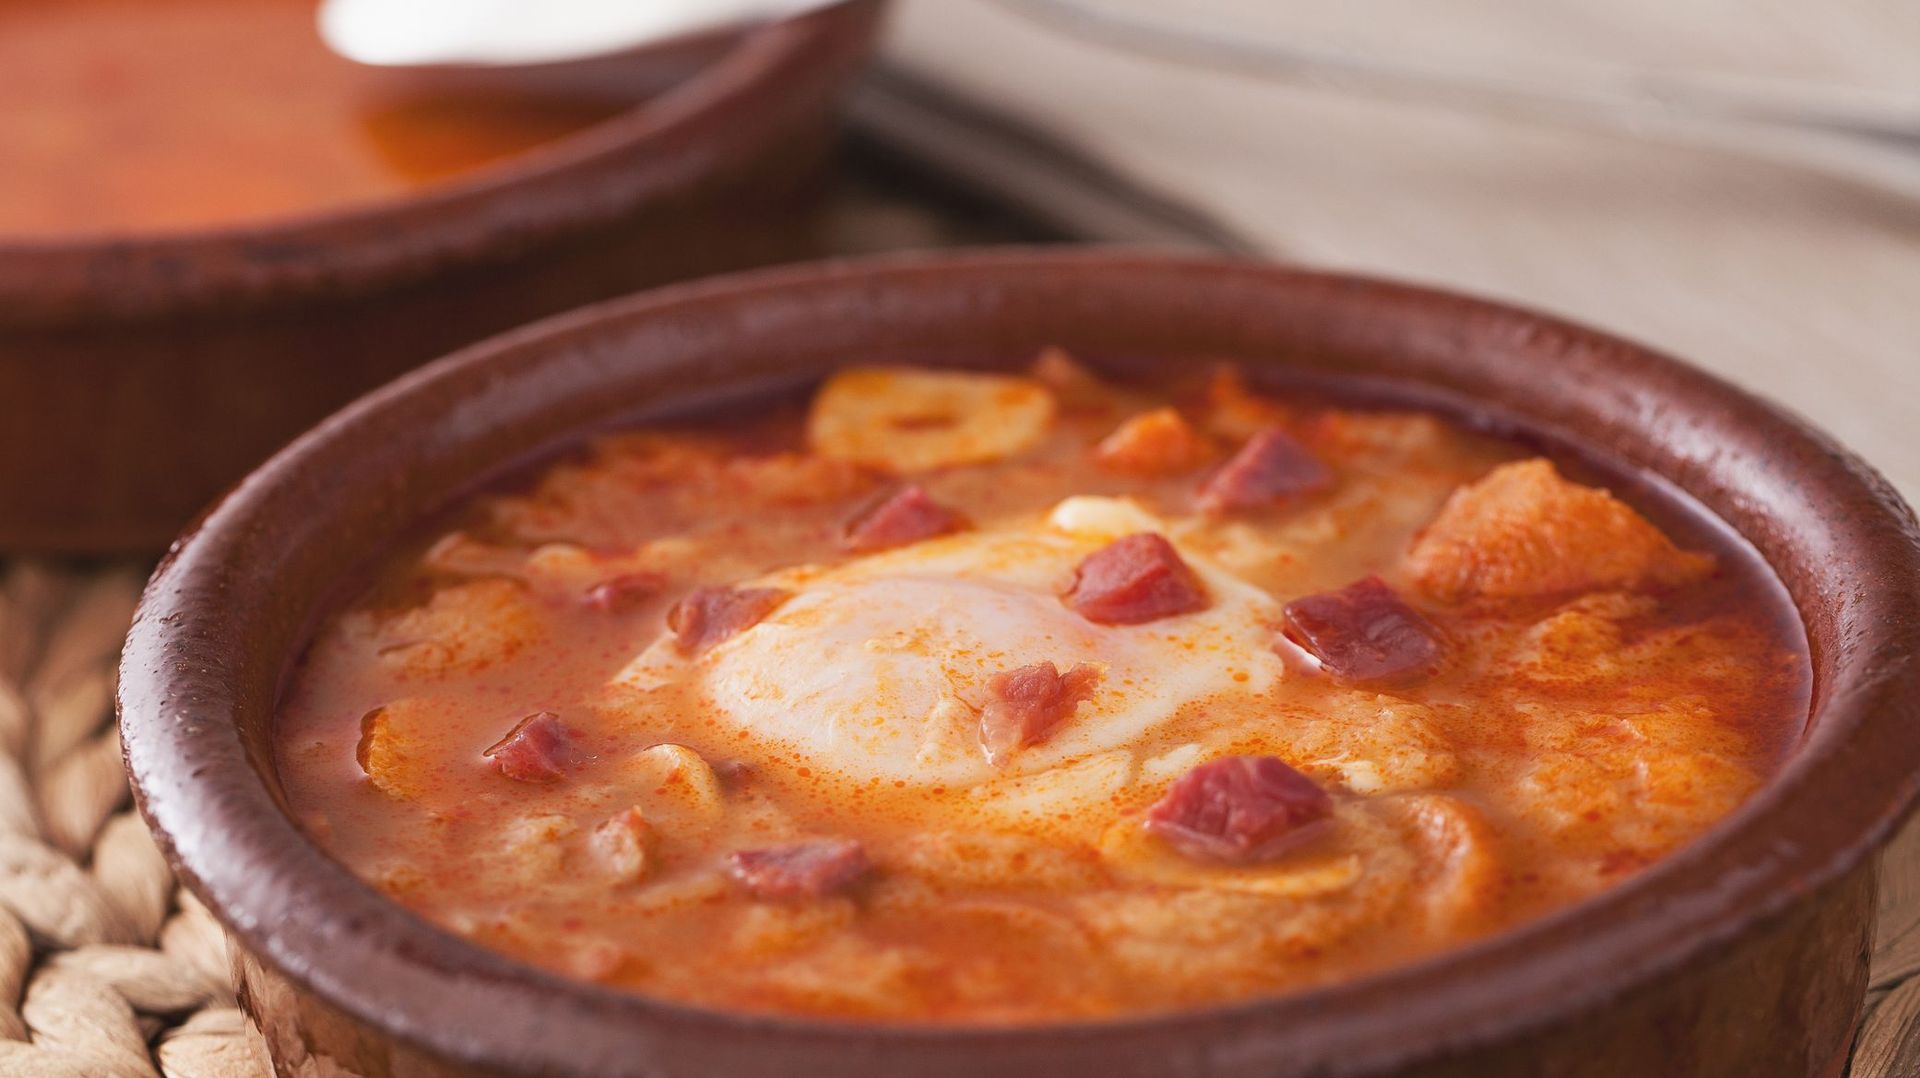 Des rumeurs évoquent la soupe à l’ail comme un aliment permettant de lutter contre le Covid-19.